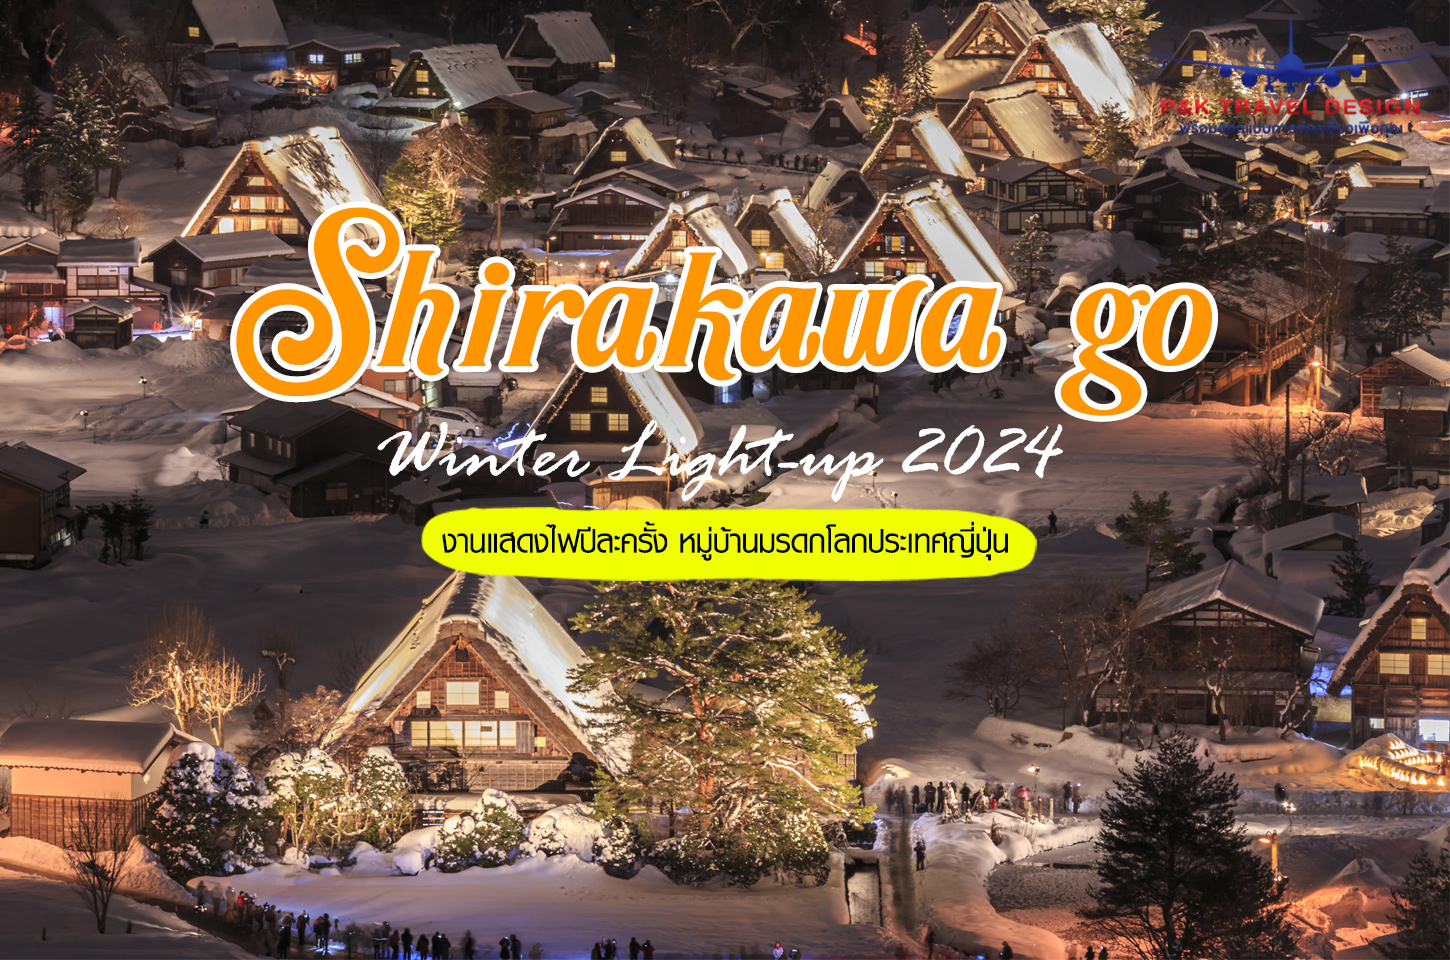 Shirakawago Light Up 2023 งานแสดงไฟหมู่บ้านมรดกโลกที่ญี่ปุ่น หนึ่งปีมีครั้งเดียว!